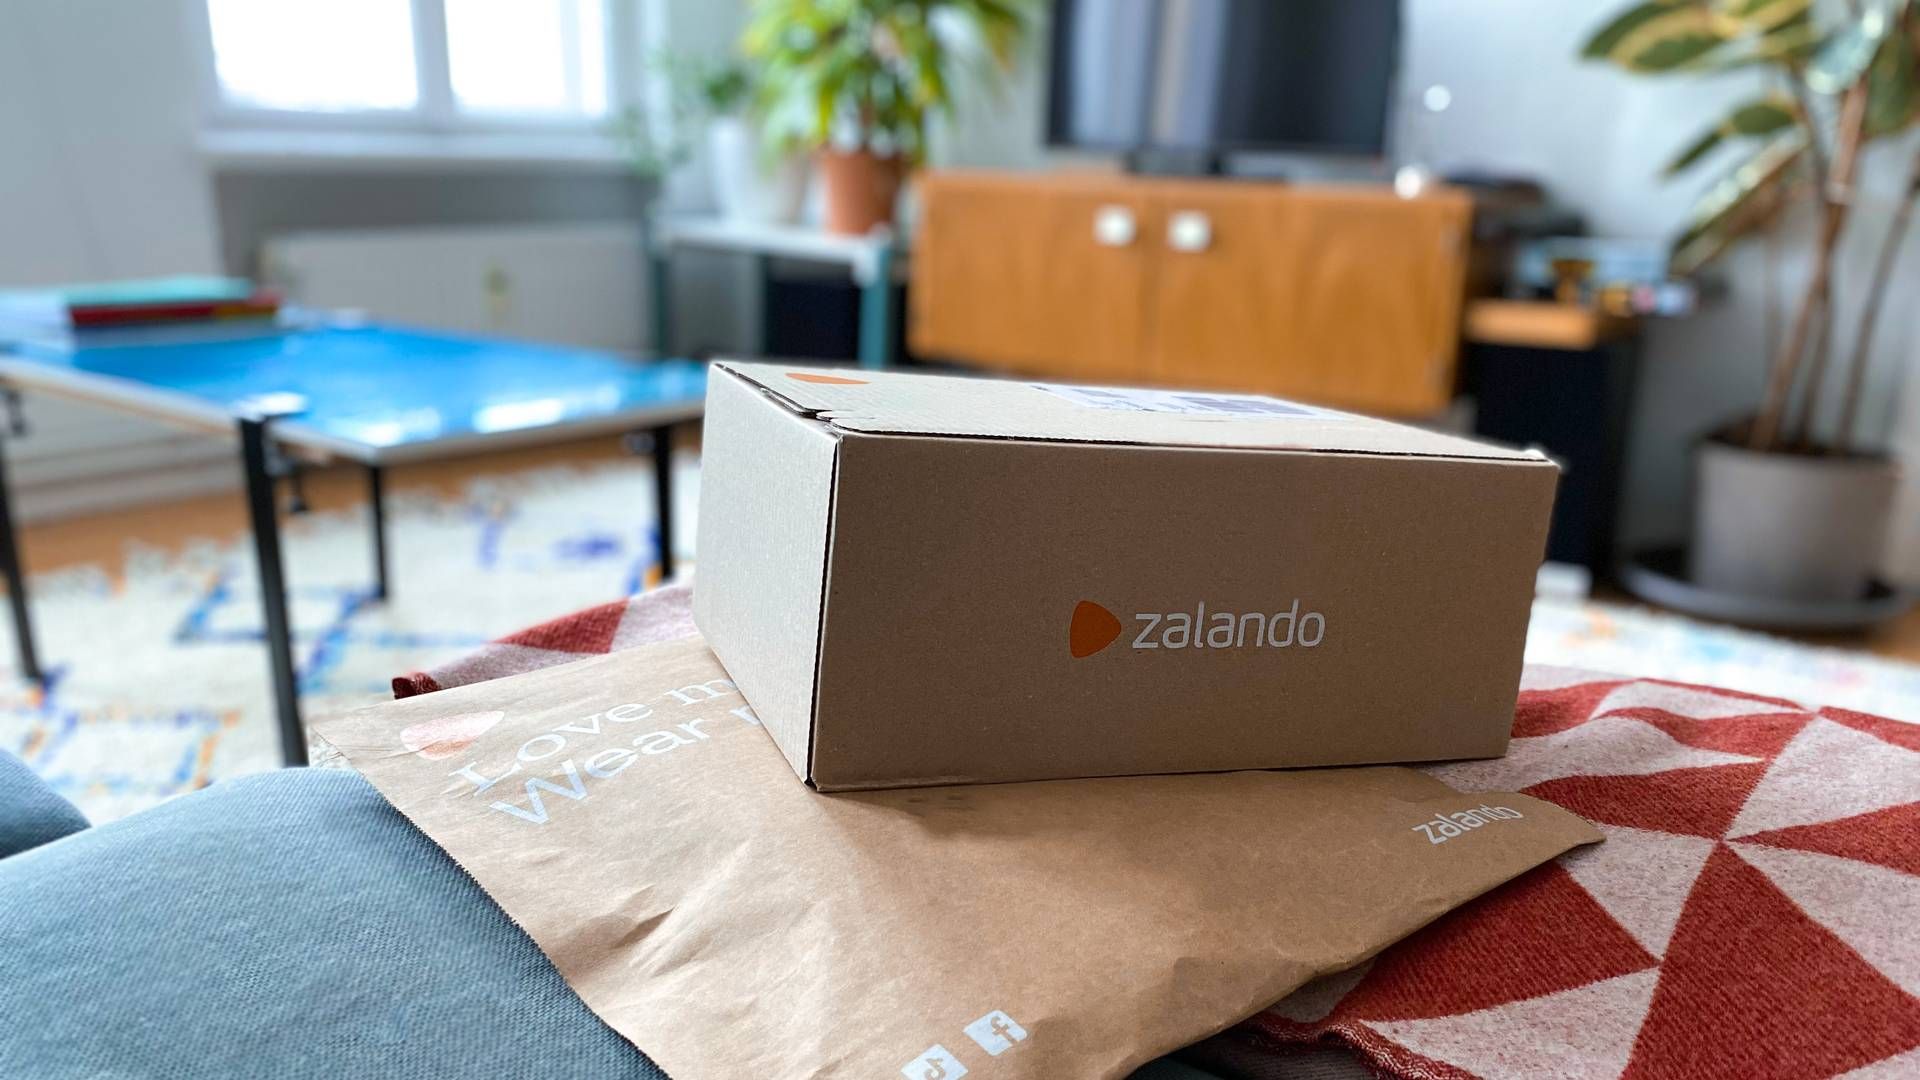 Zalando, en av de ledende moteplattformene i Europa, må nå gjøre flere endringer på grunn av villedende markedsføring. | Foto: Pr/zalando